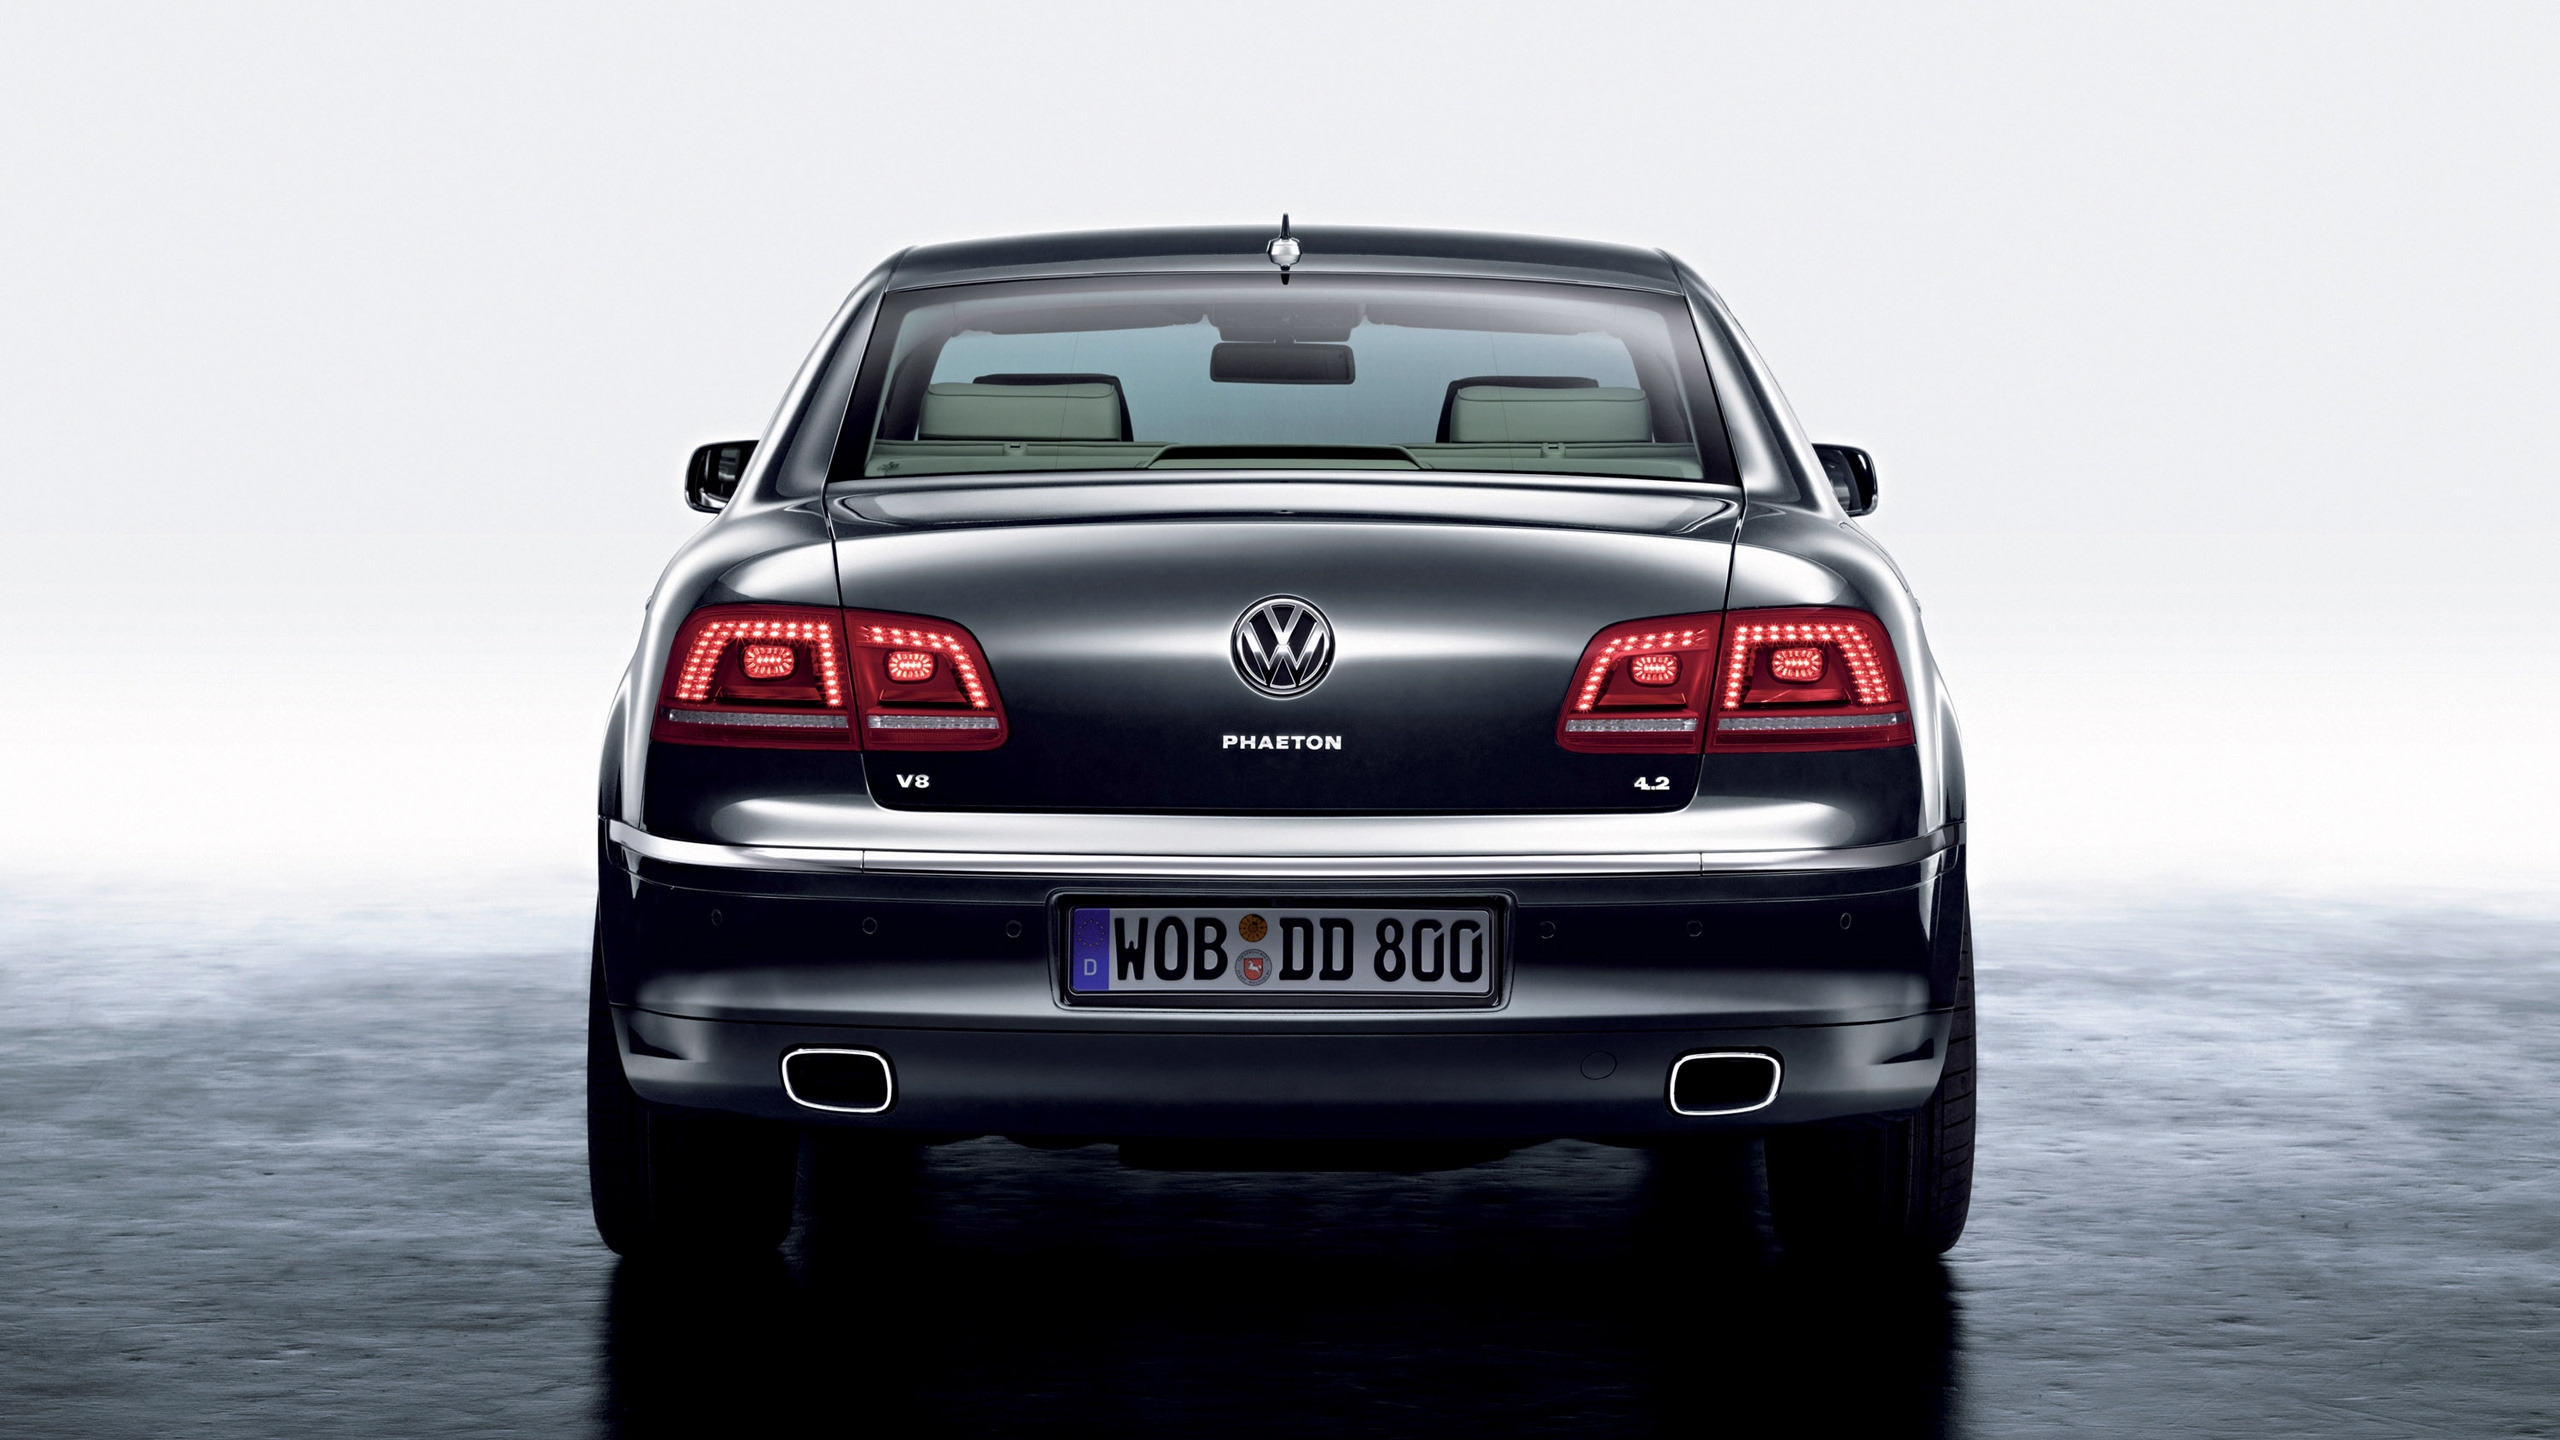 Volkswagen Phaeton Rear for 2560x1440 HDTV resolution